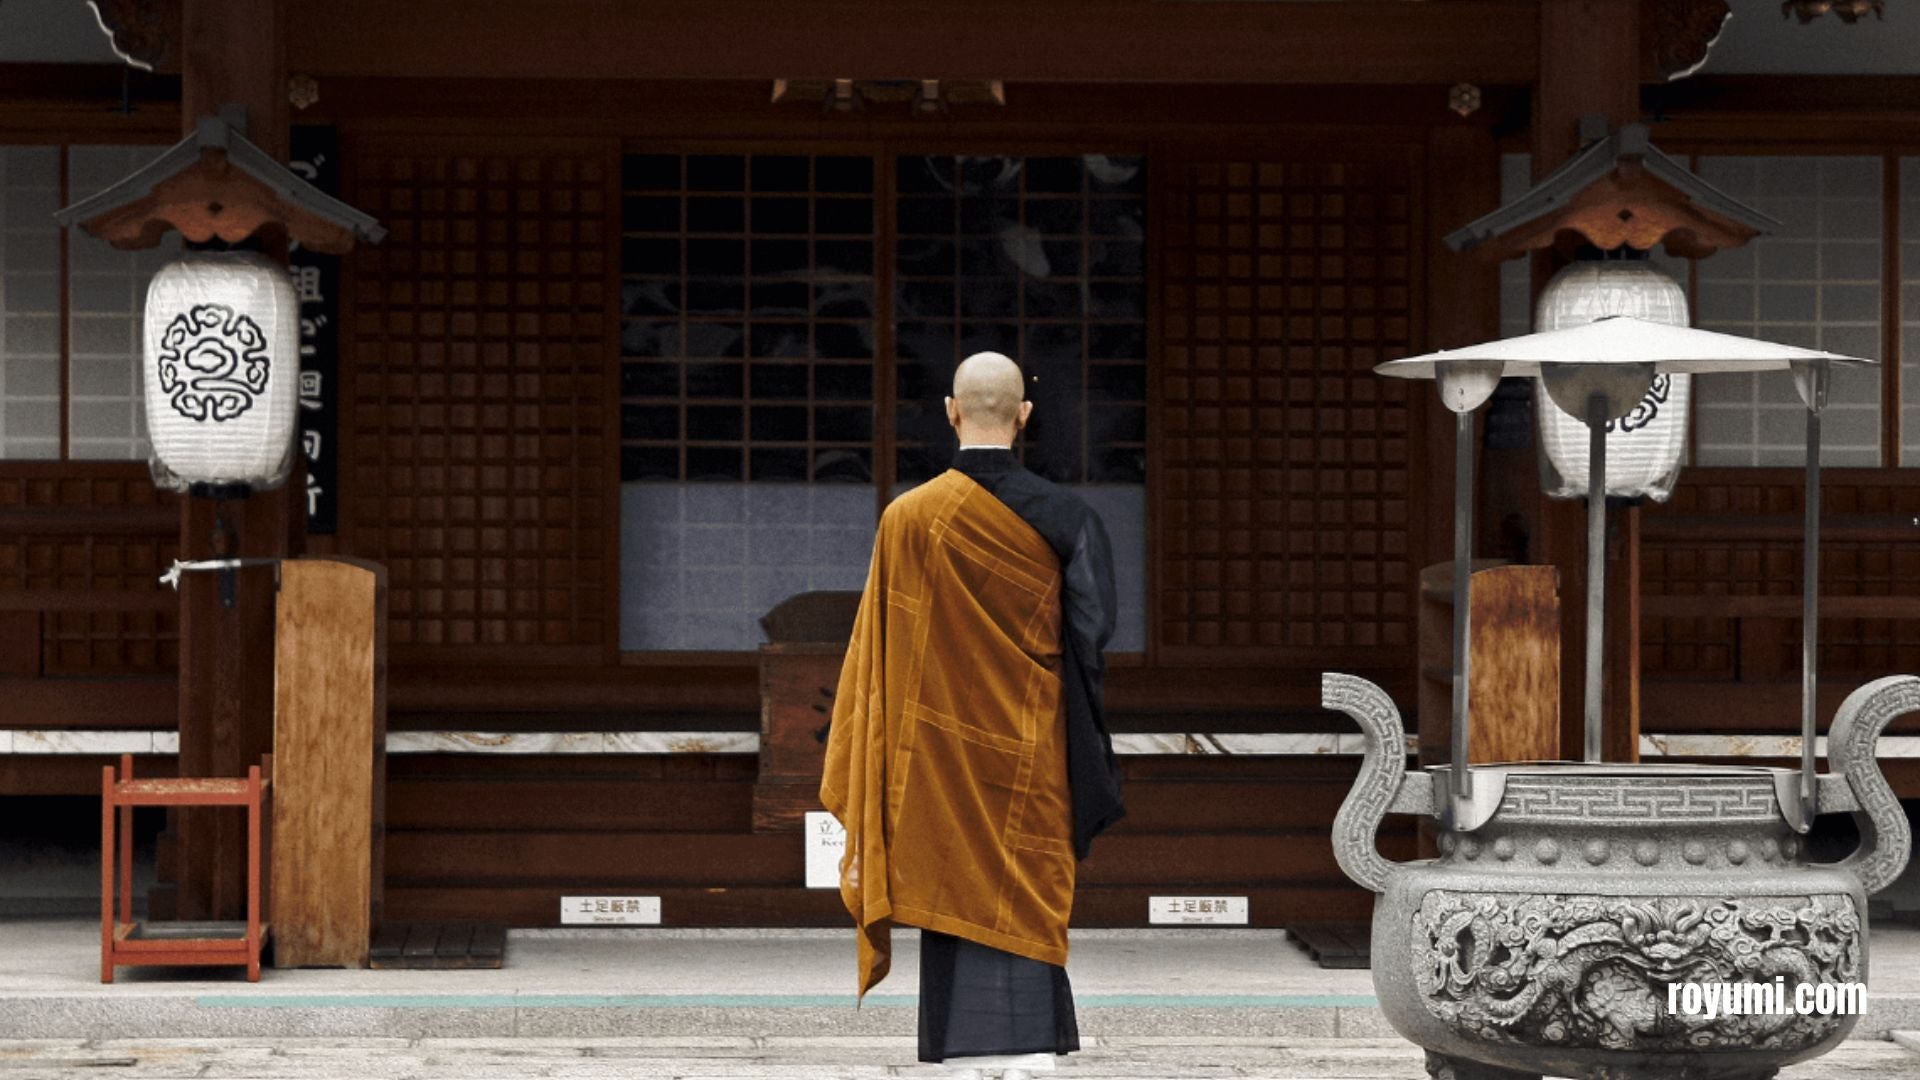 日本の寺院に一時的に僧侶として入会する方法